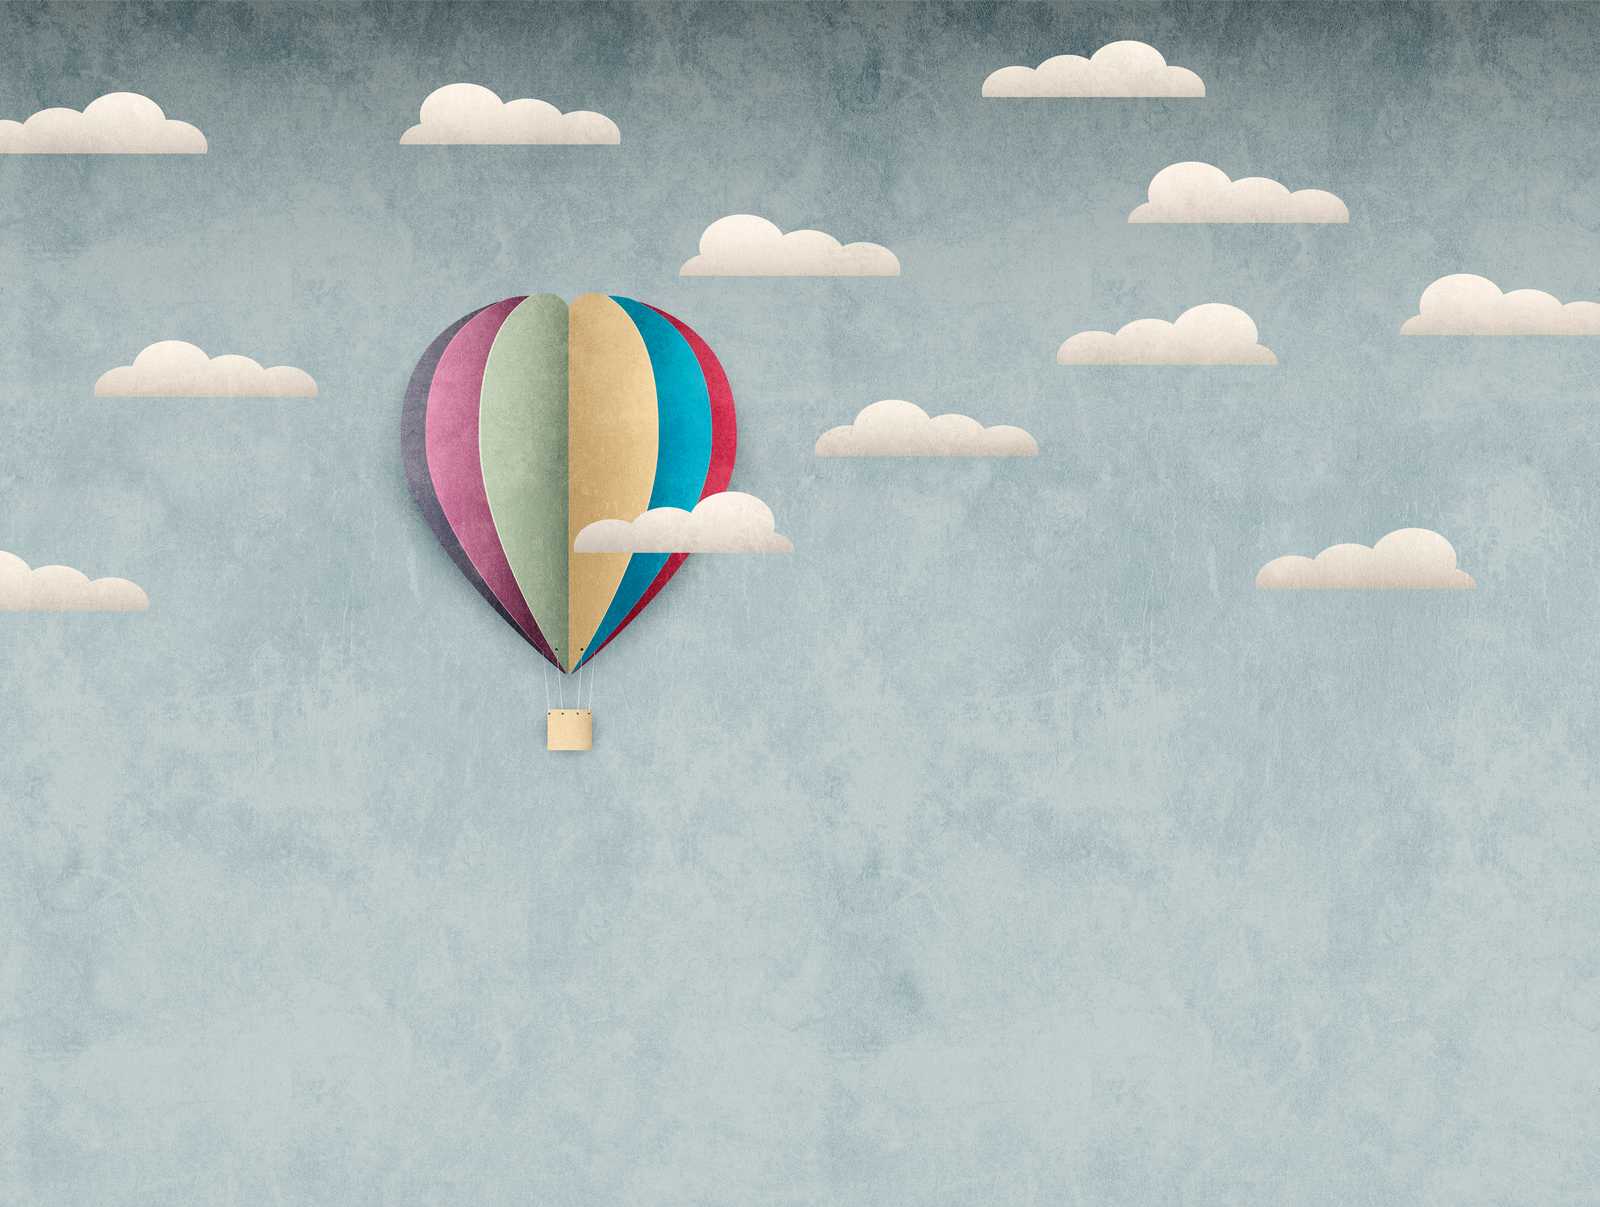             behang nieuwigheid | motief behang luchtballon & bewolkte hemel voor kinderen
        